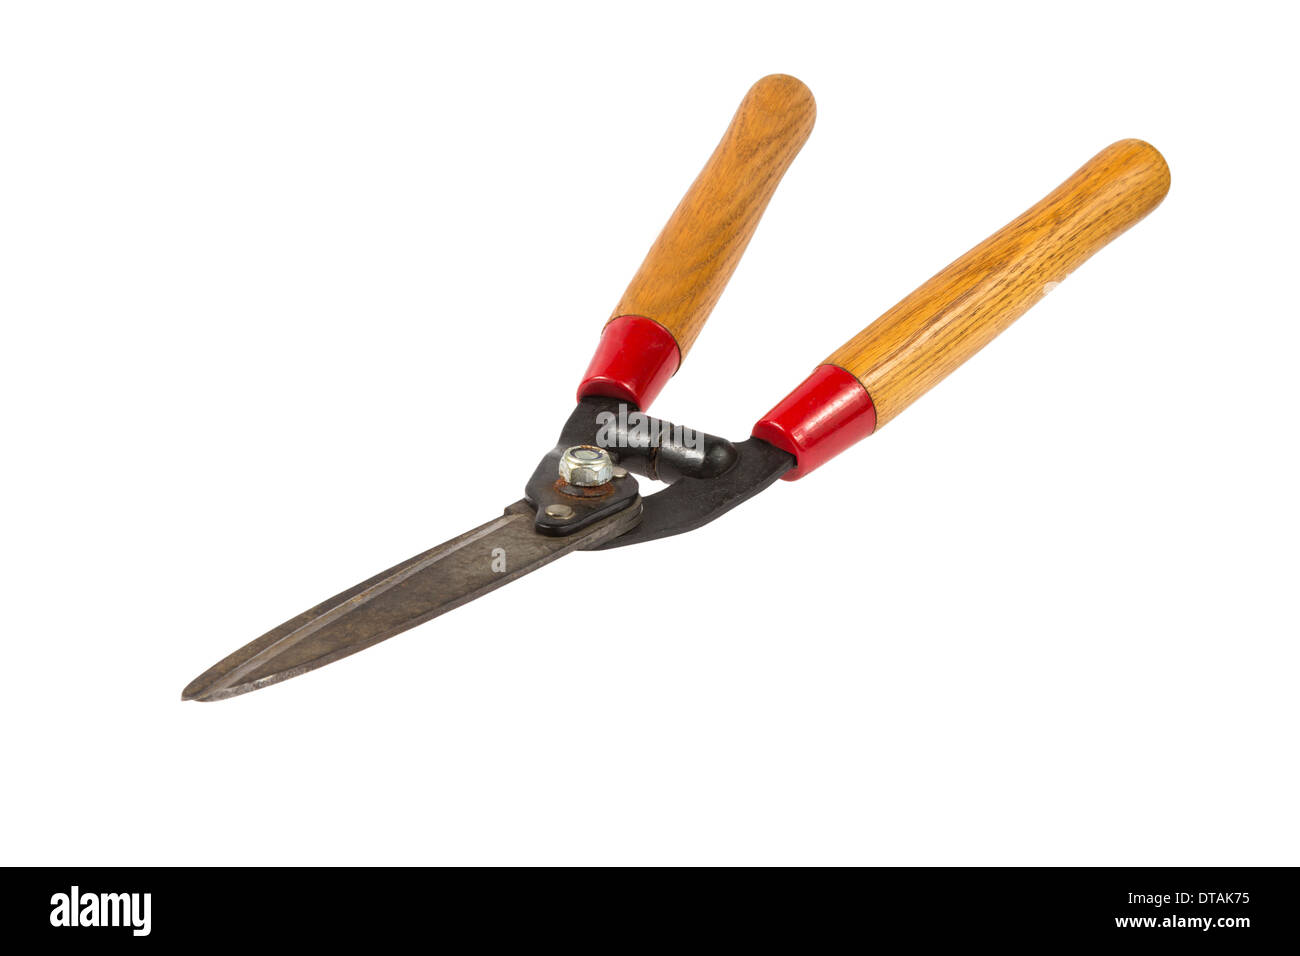 Manuale utilizzato hedge clippers con lame nere e impugnature in legno isolato su sfondo bianco Foto Stock